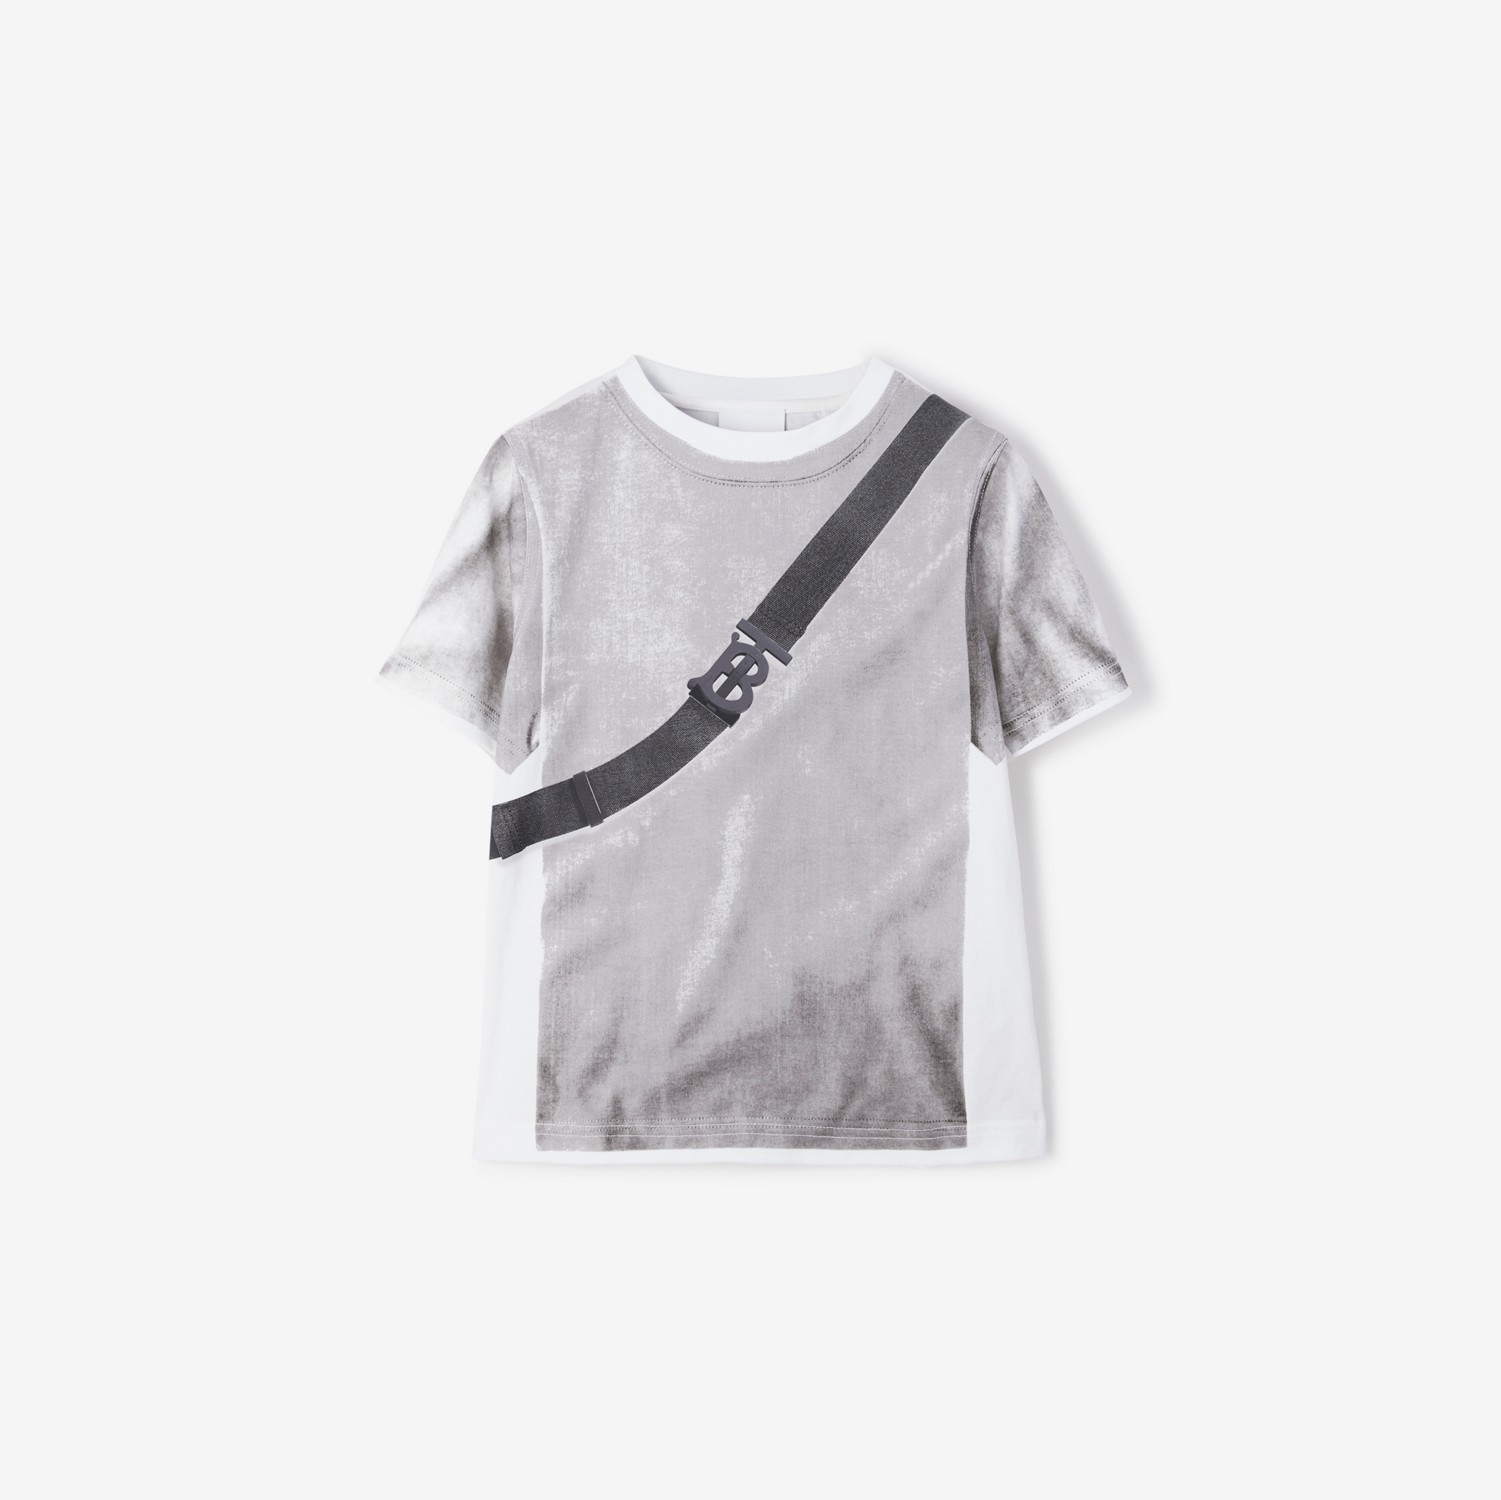 T-shirt in cotone con stampa borsa (Bianco) | Sito ufficiale Burberry®